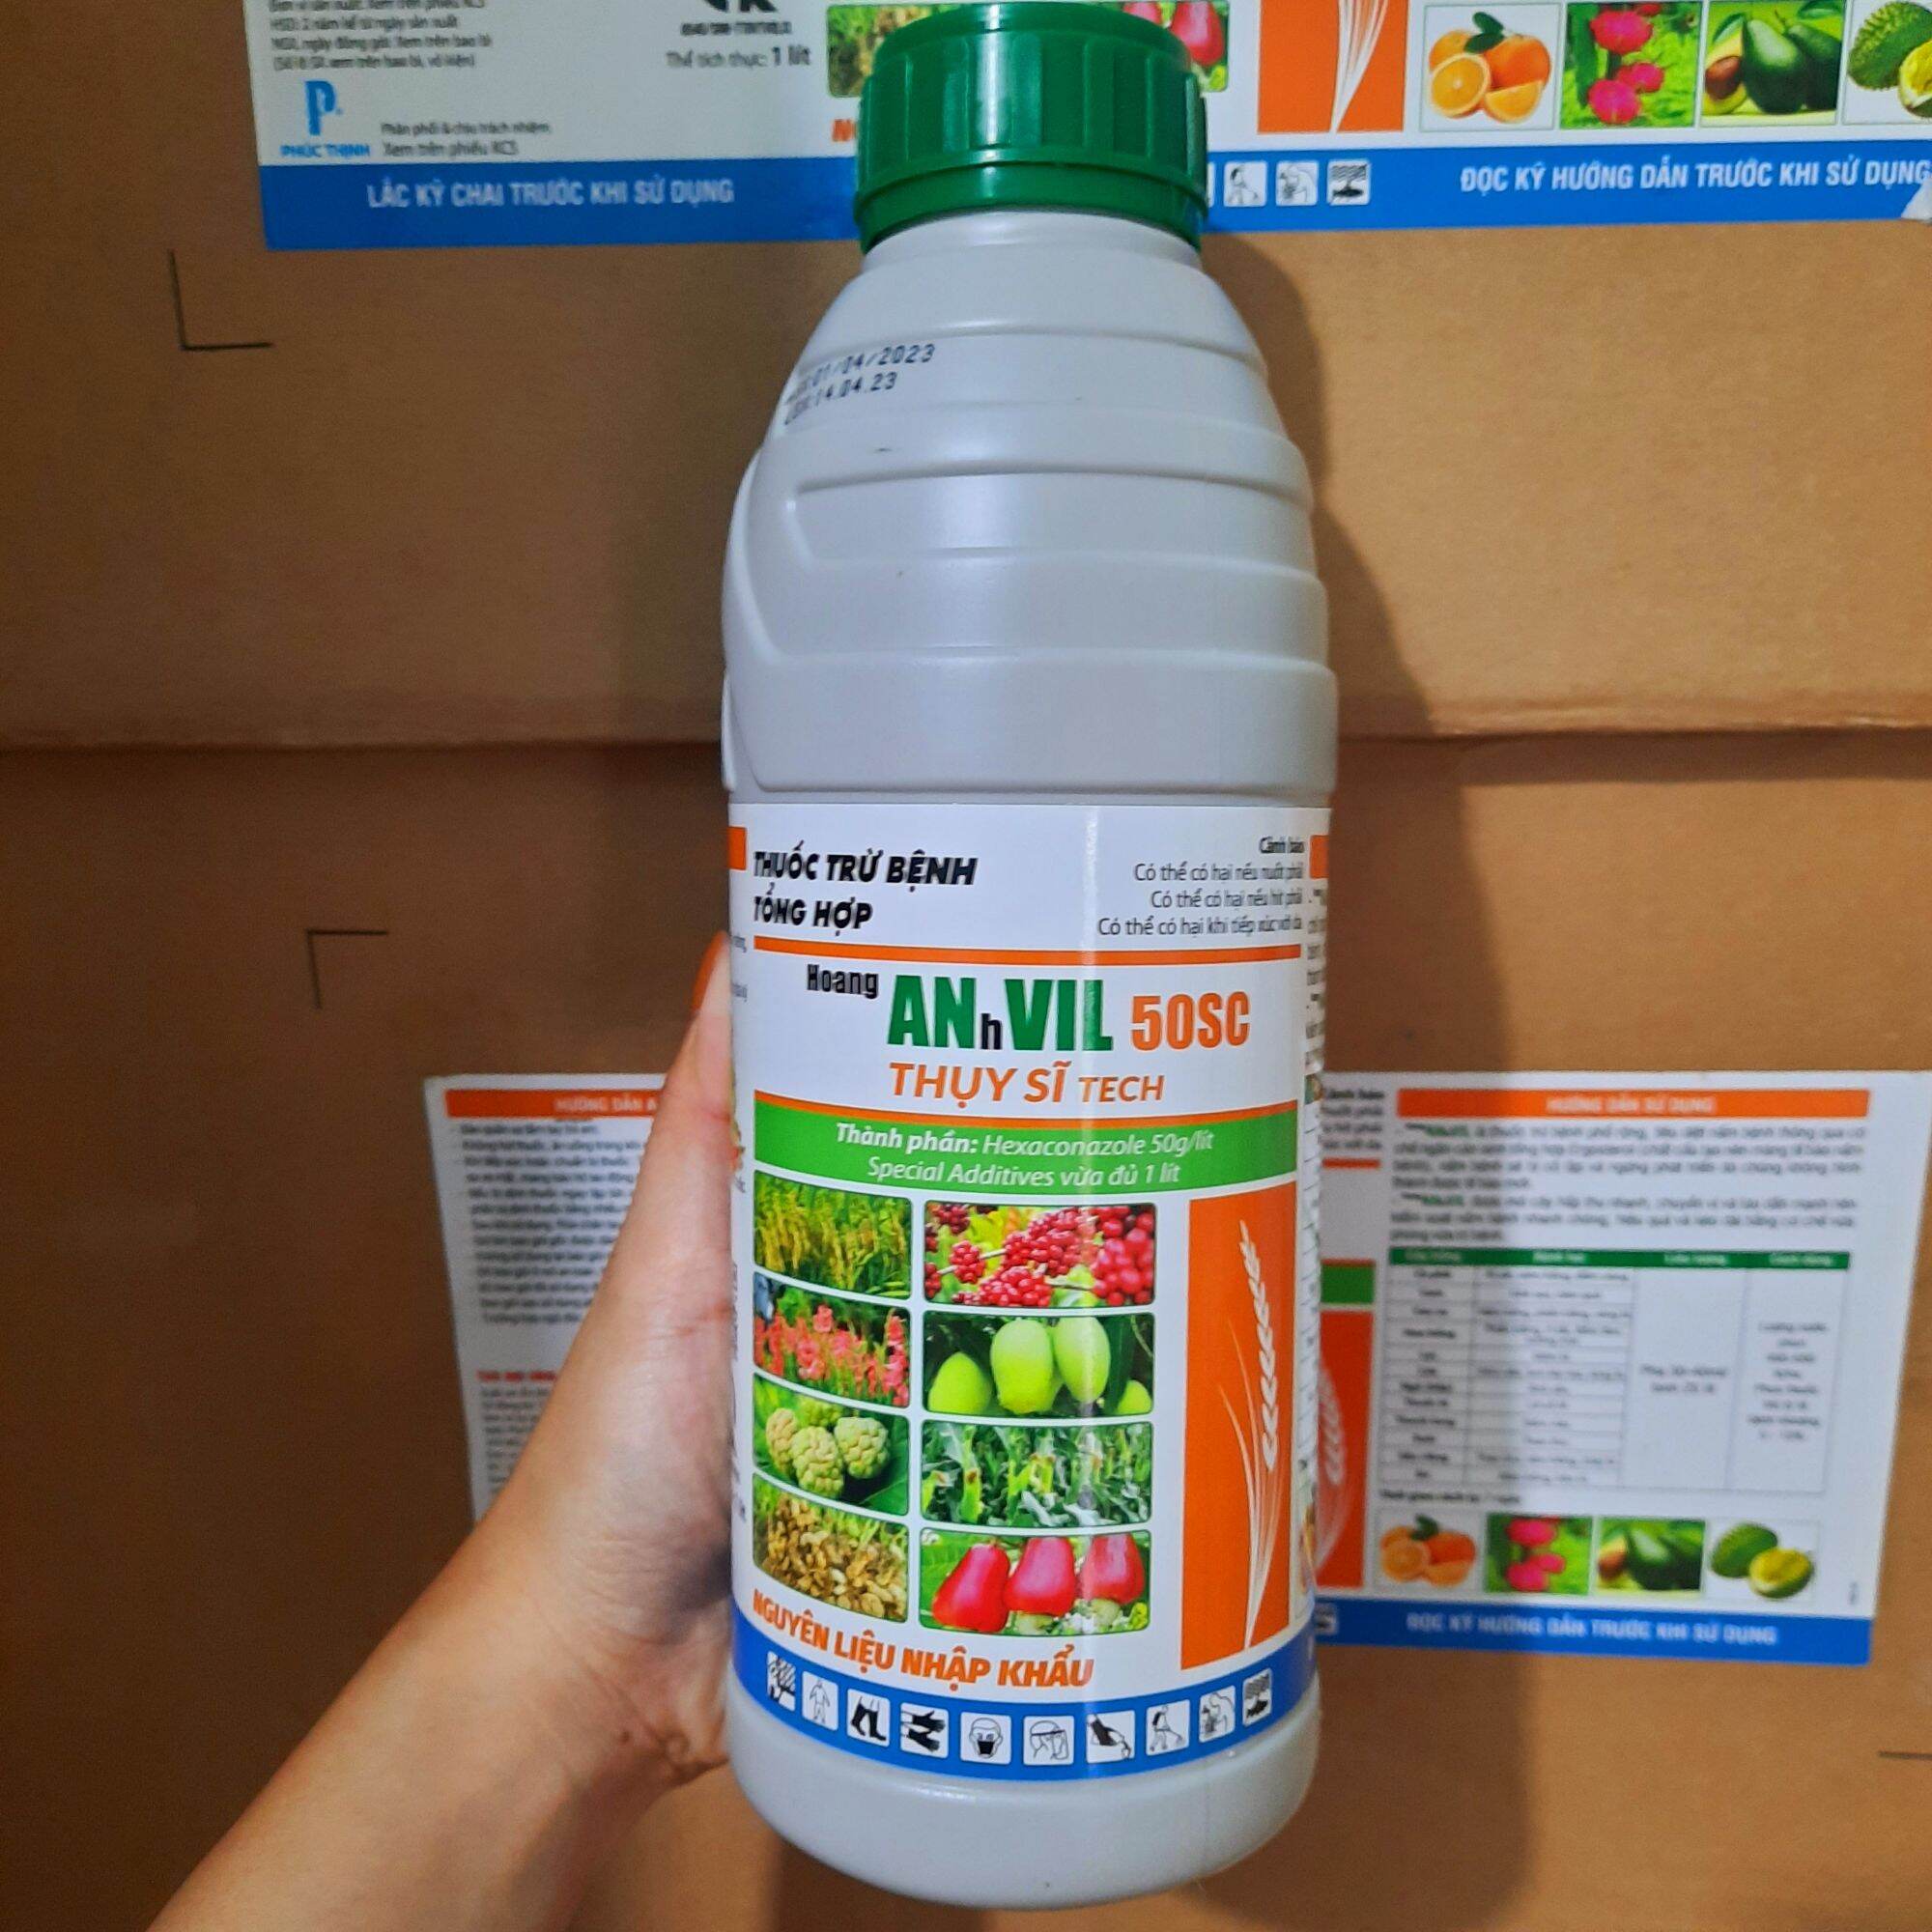 ANVIL 5SC THỤY SĨ hoạt chất HEXACONAZOLE chai 1 lít chuyên phòng trừ nấm bệnh cây trồng